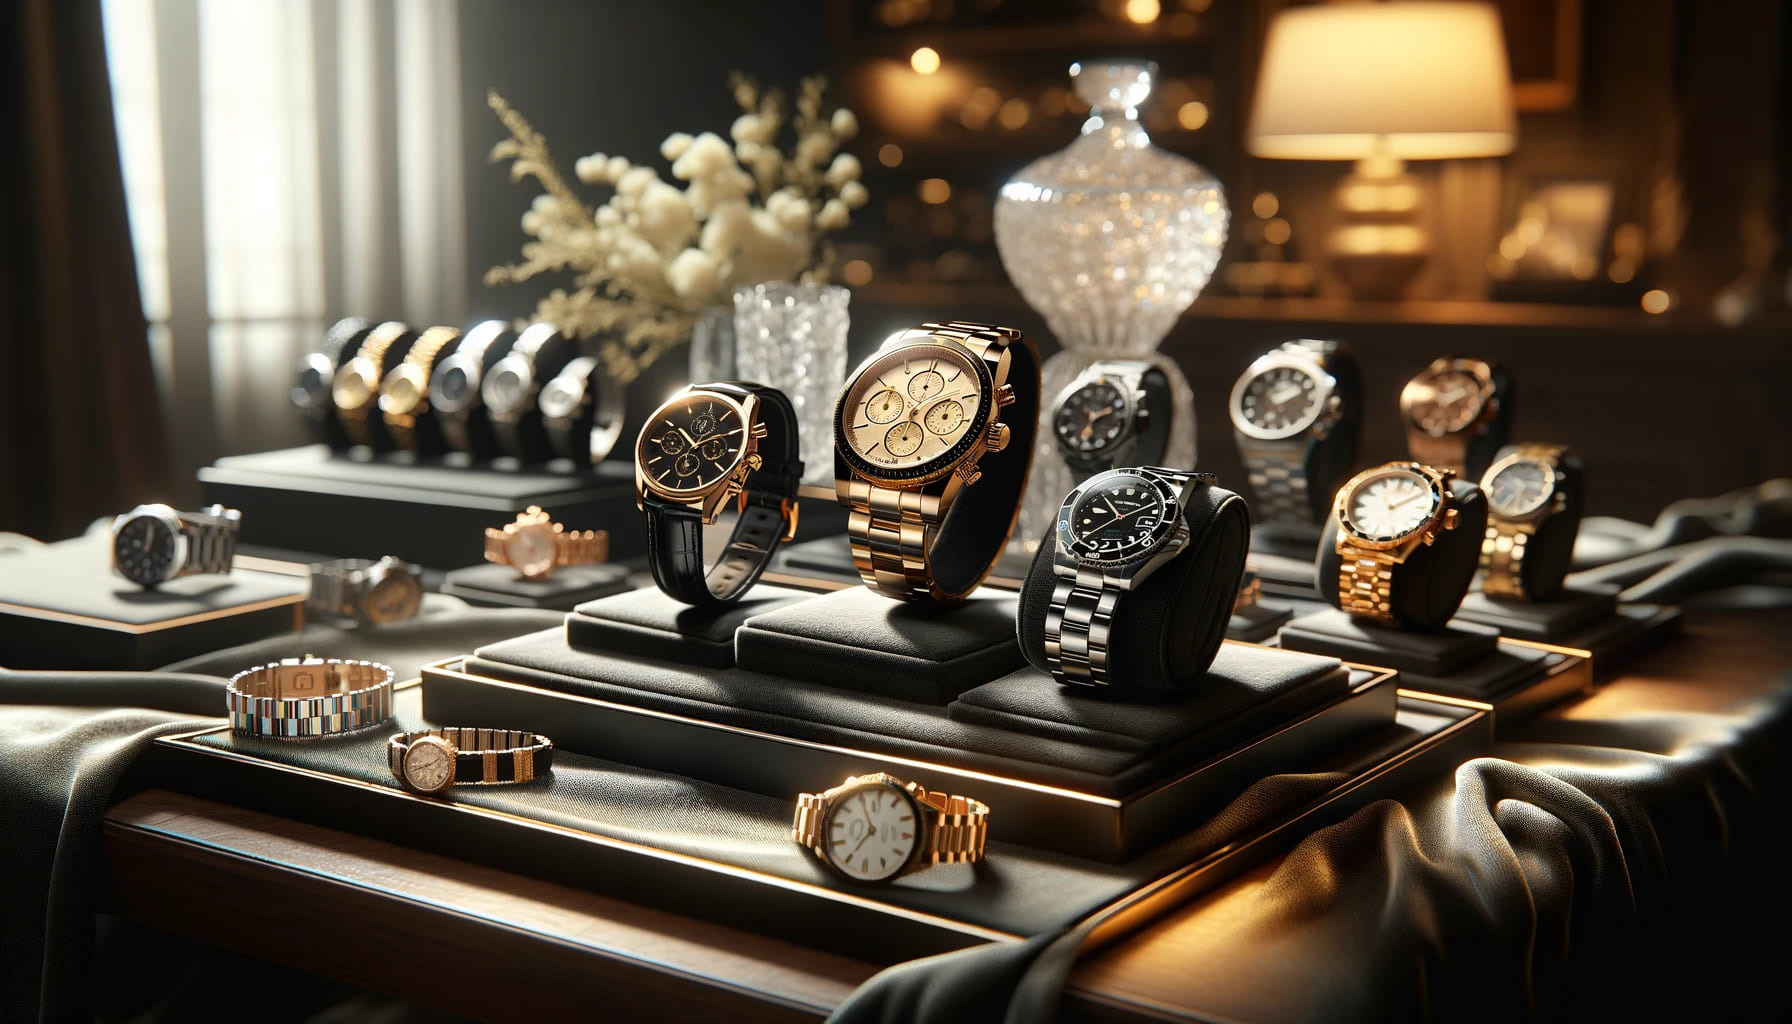 Major luxury watch brands